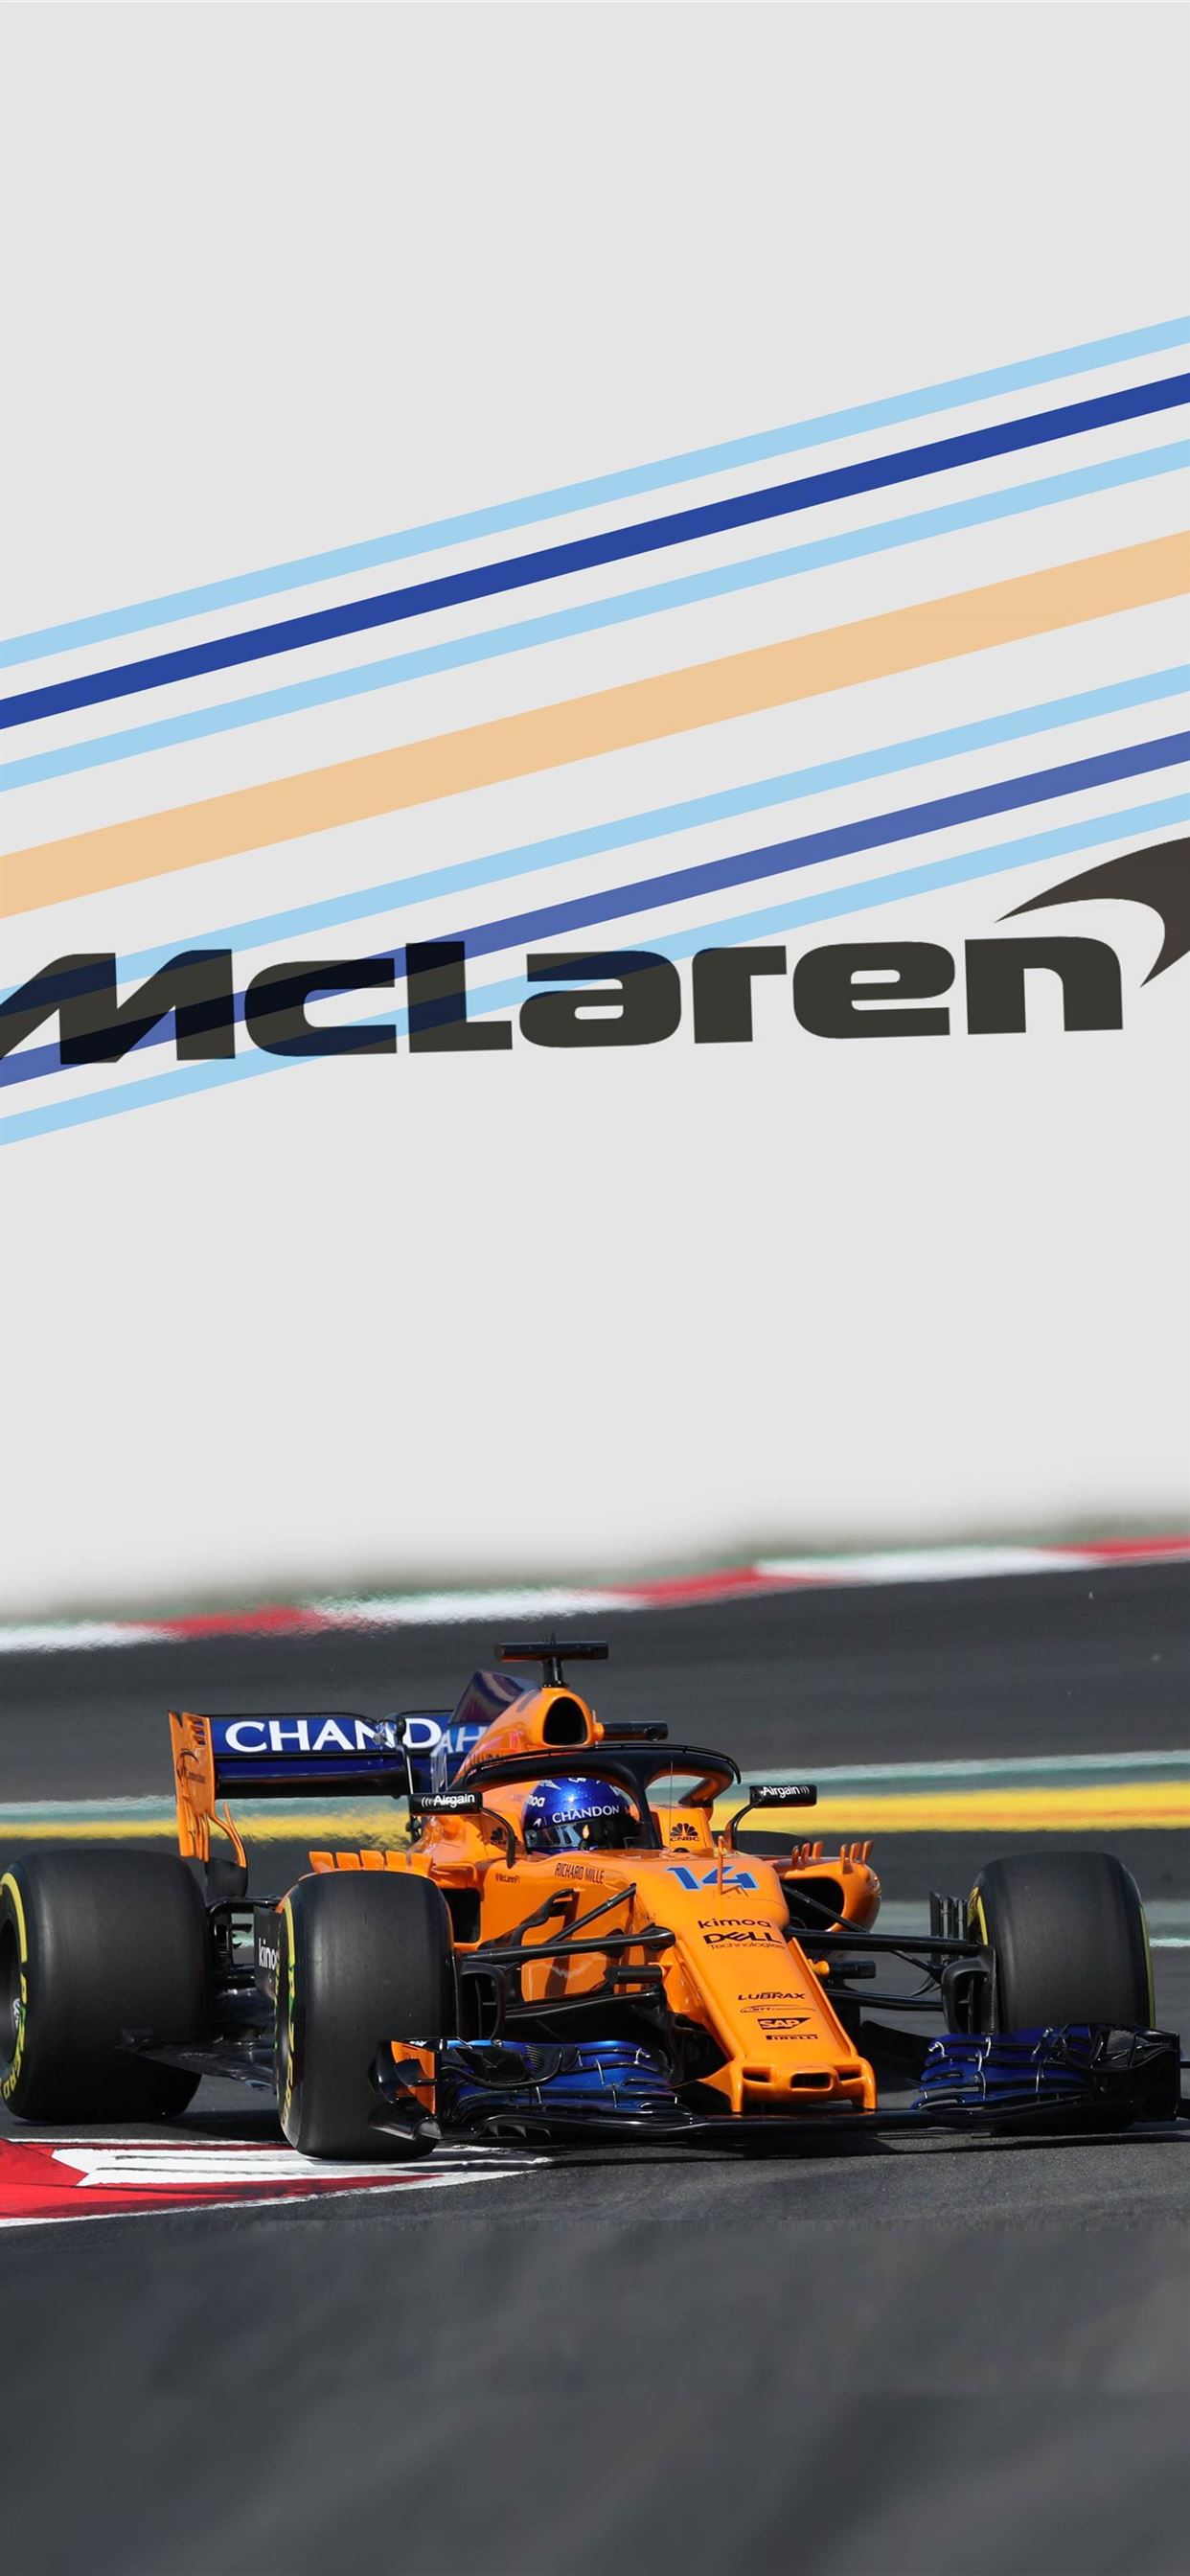 Mclaren Racing Limited Wallpapers